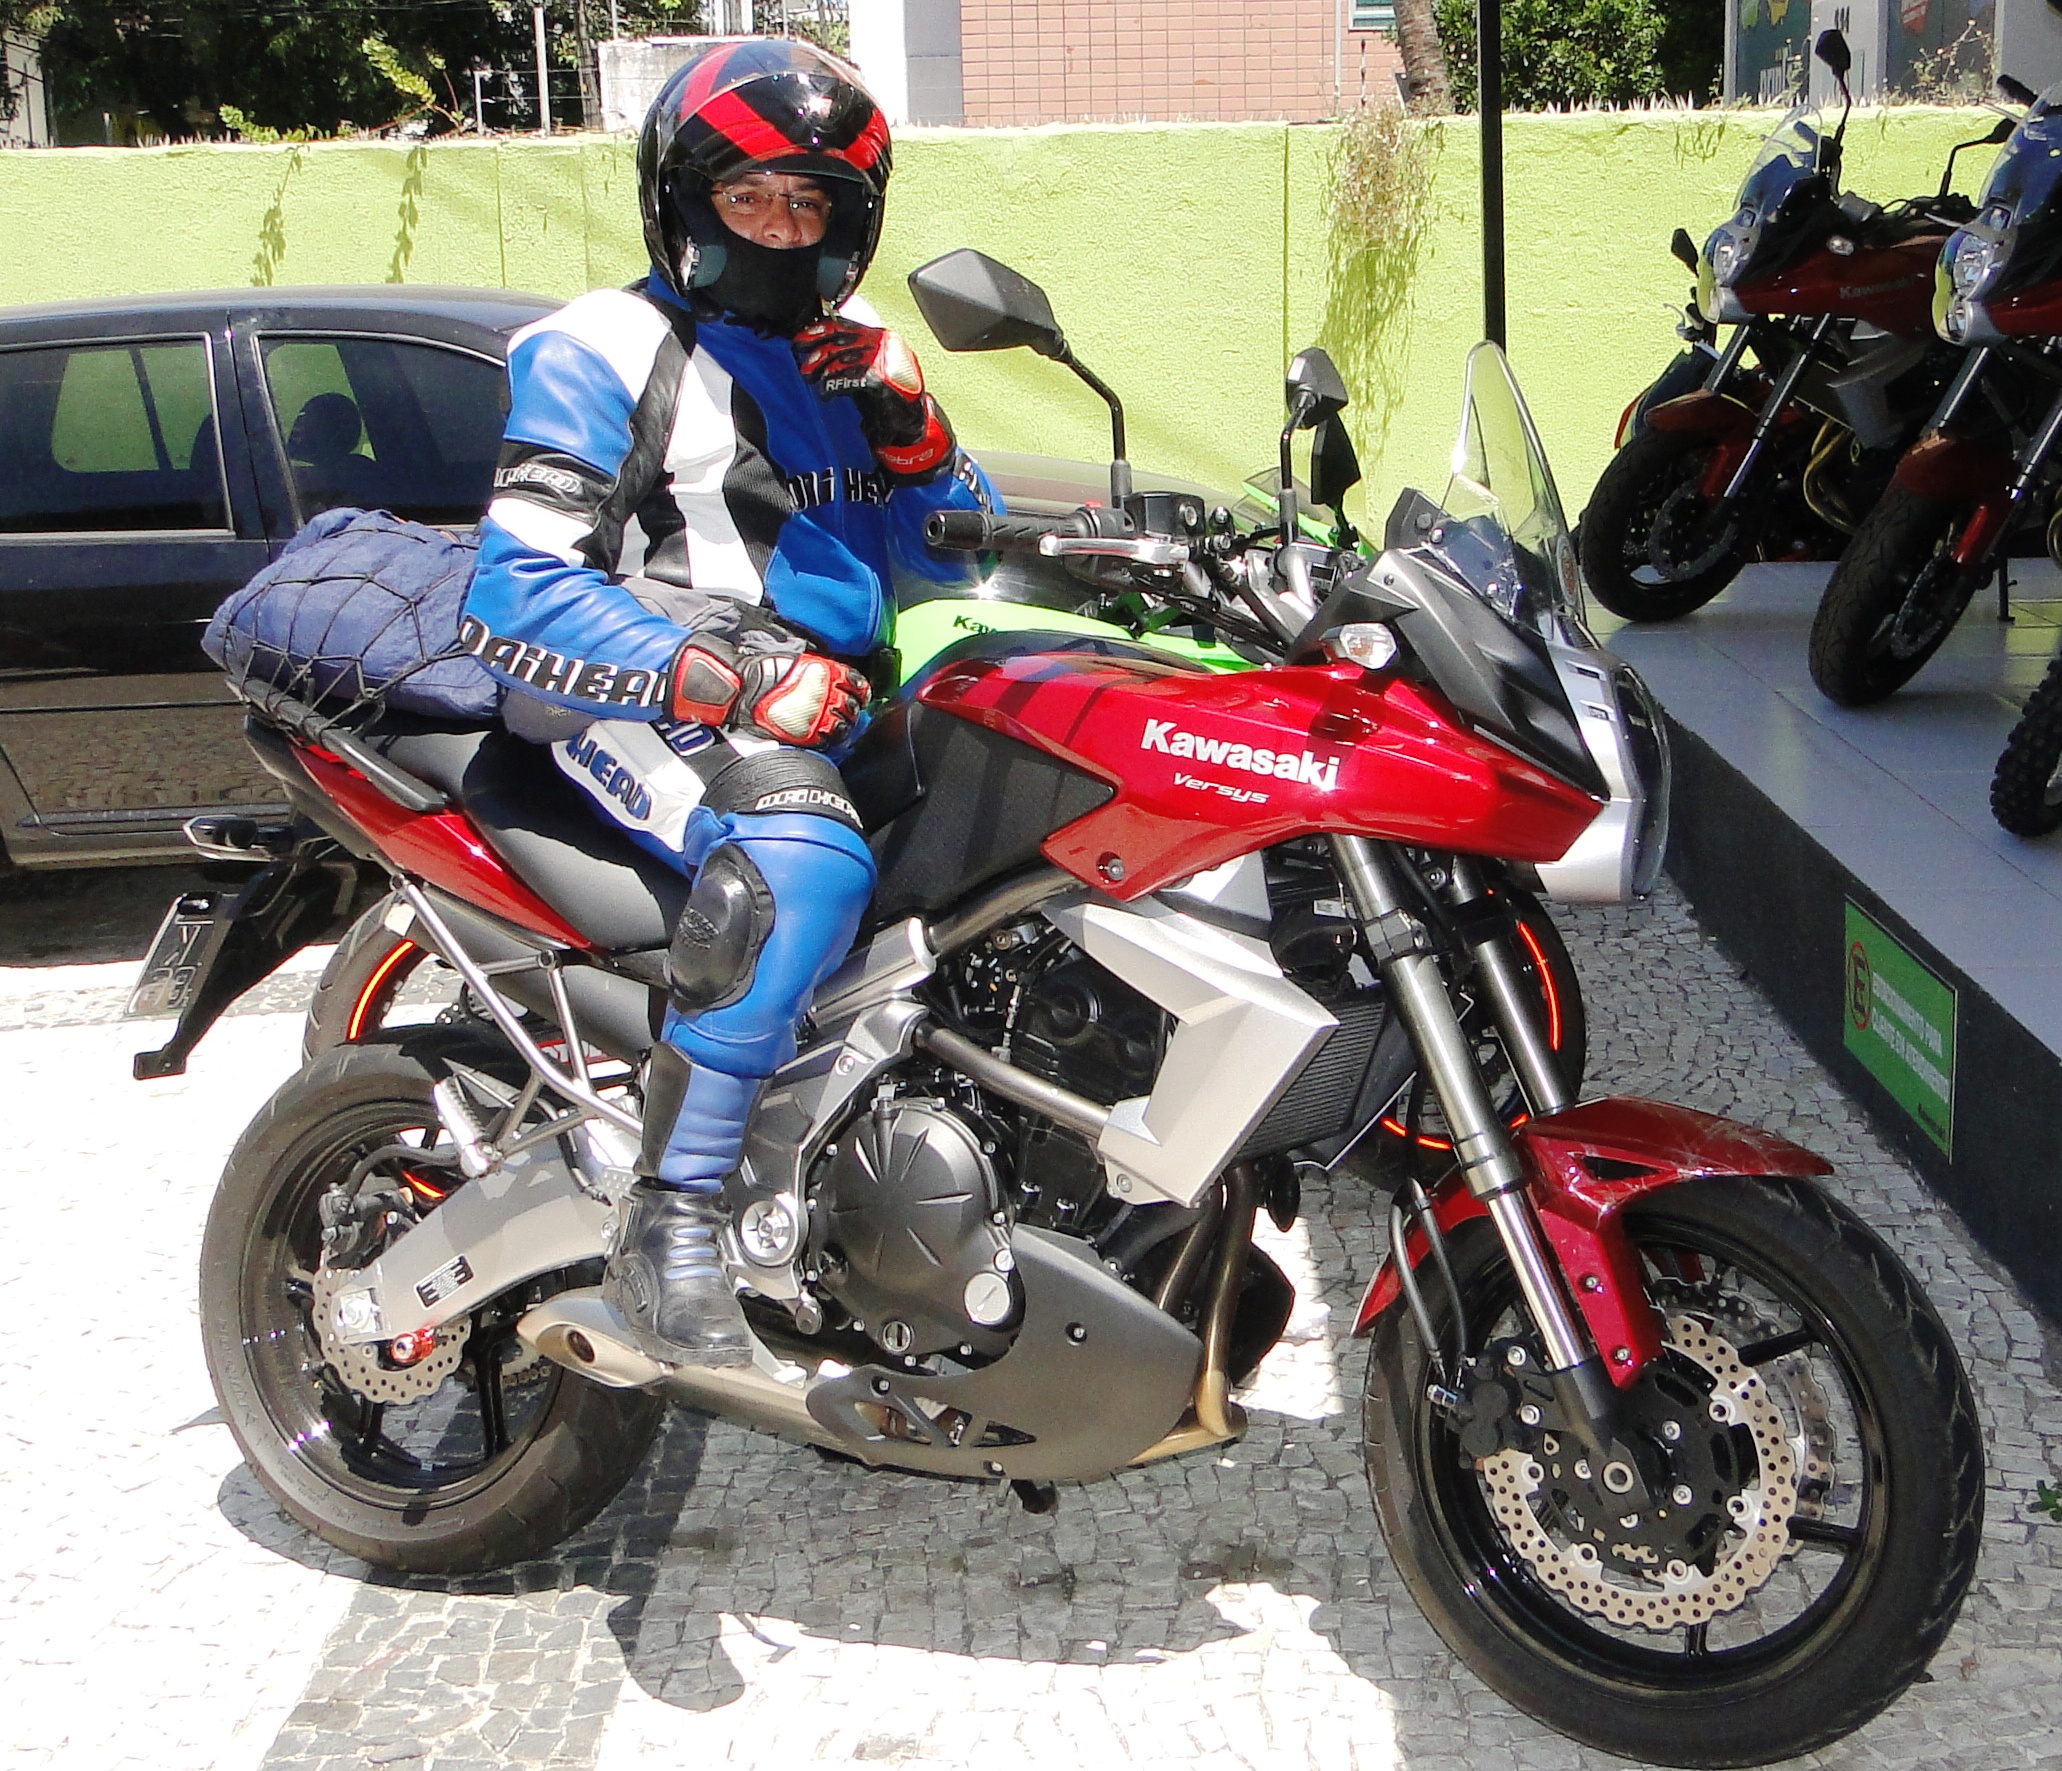 Test Ride: Rodando com uma Kawasaki Versys e uma Suzuki VStrom.